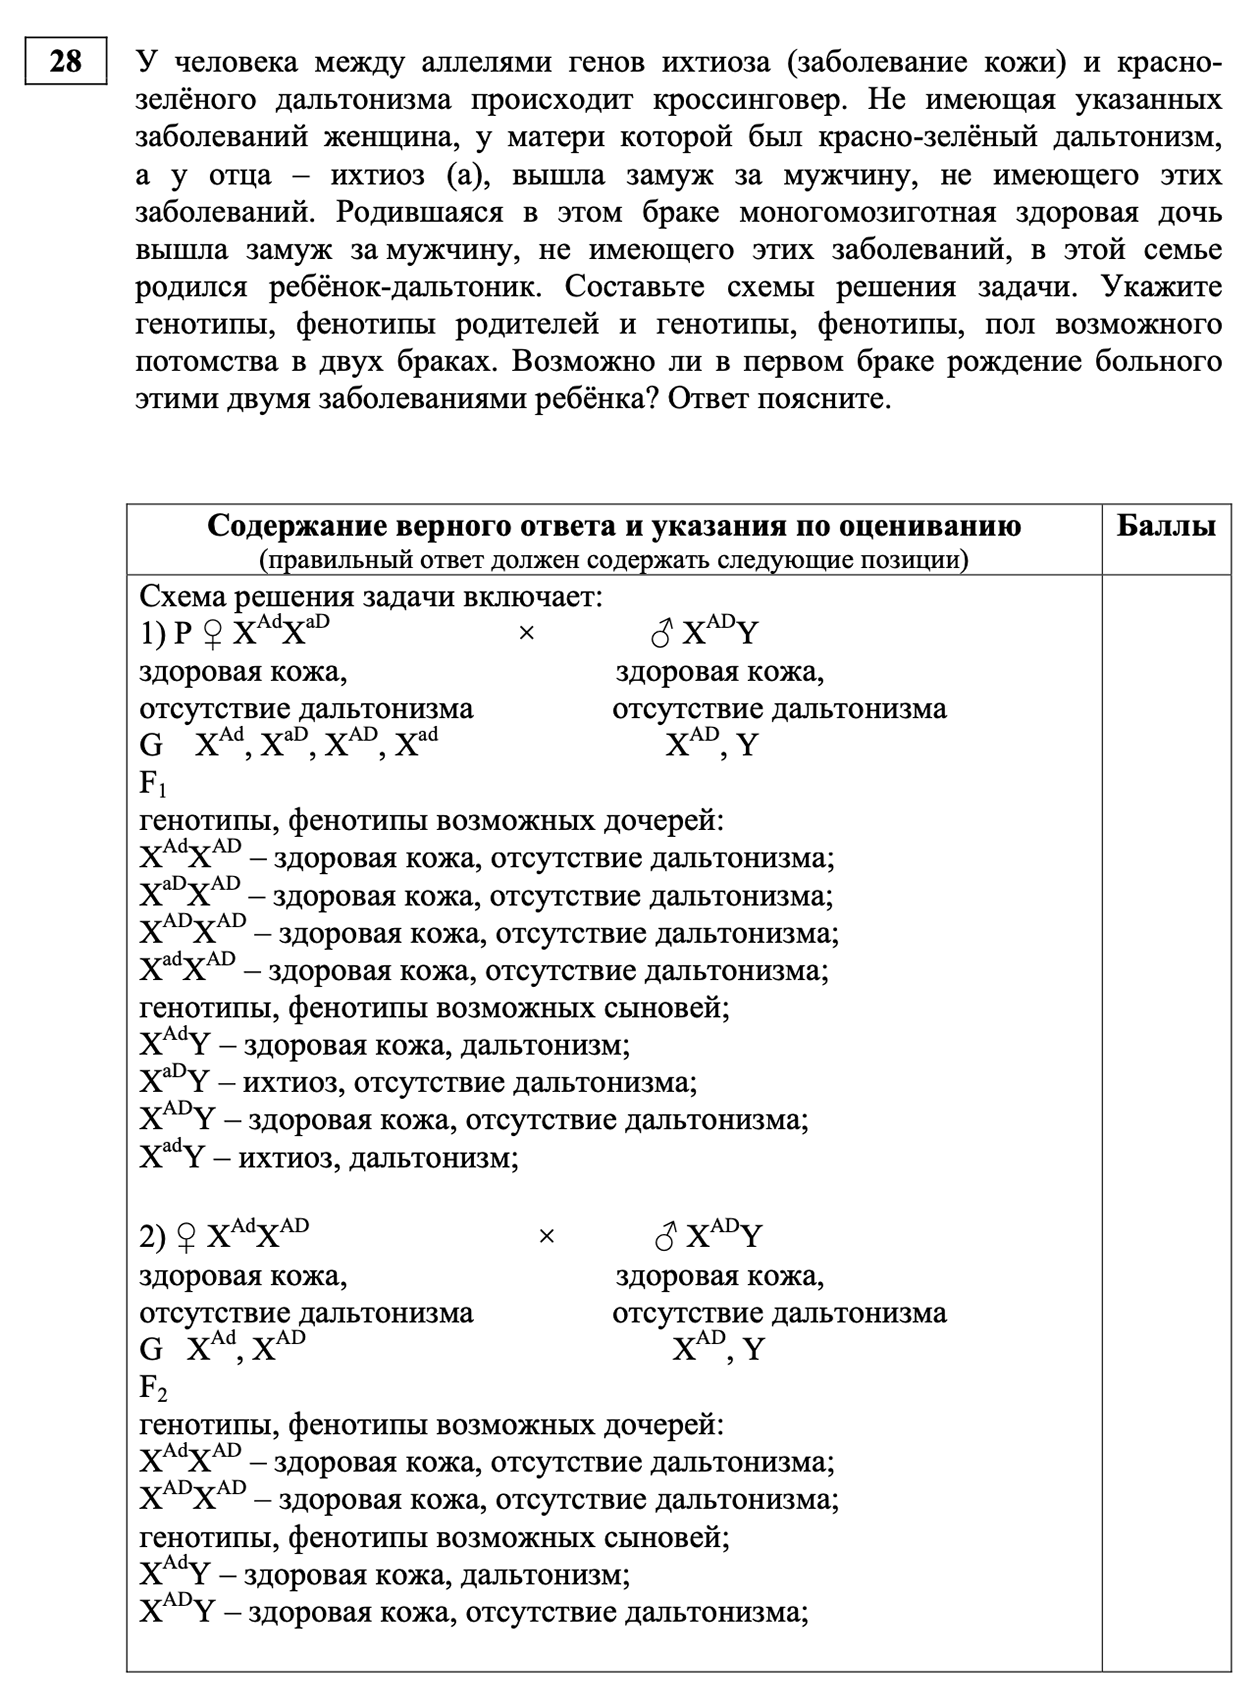 Последнее задание в экзамене с критериями оценивания. Источник: fipi.ru